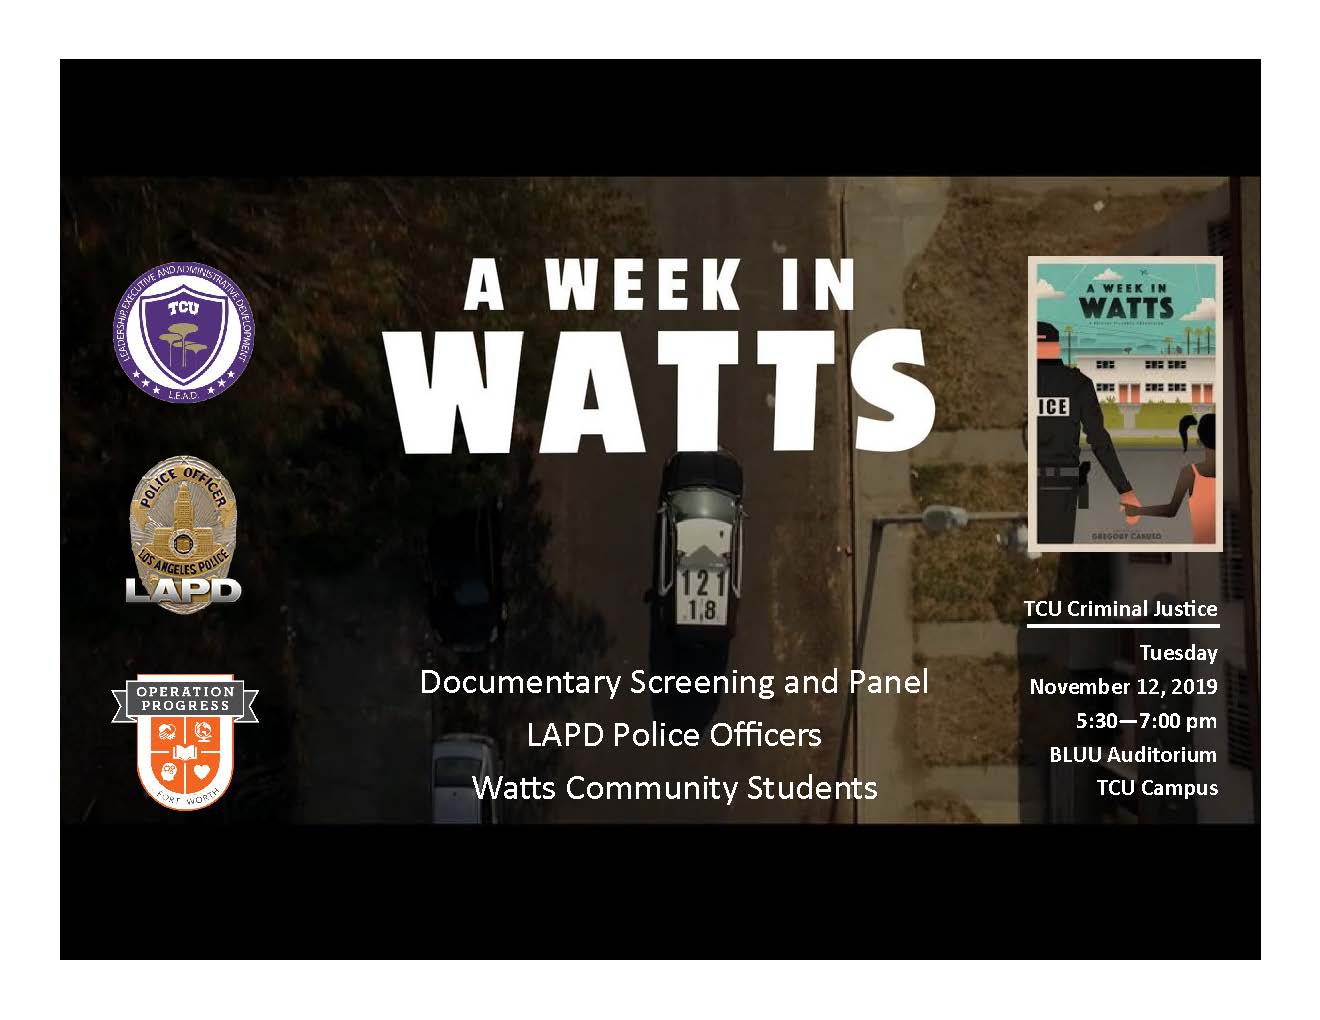 Week in Watts flyer